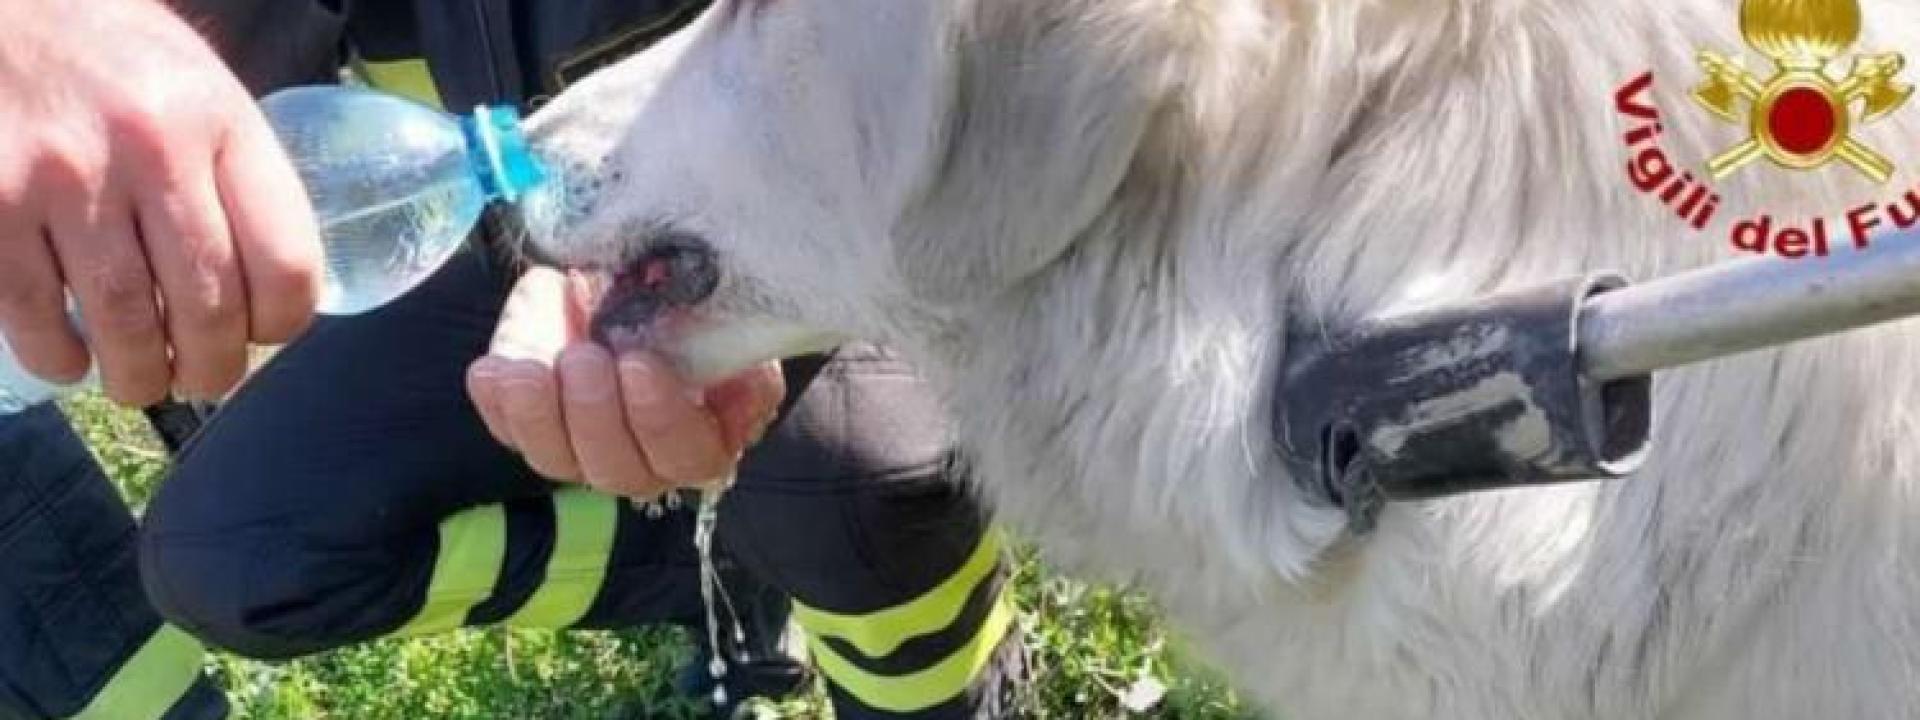 Marche - Resta intrappolato in un laccio per cinghiali: cane salvato dai pompieri